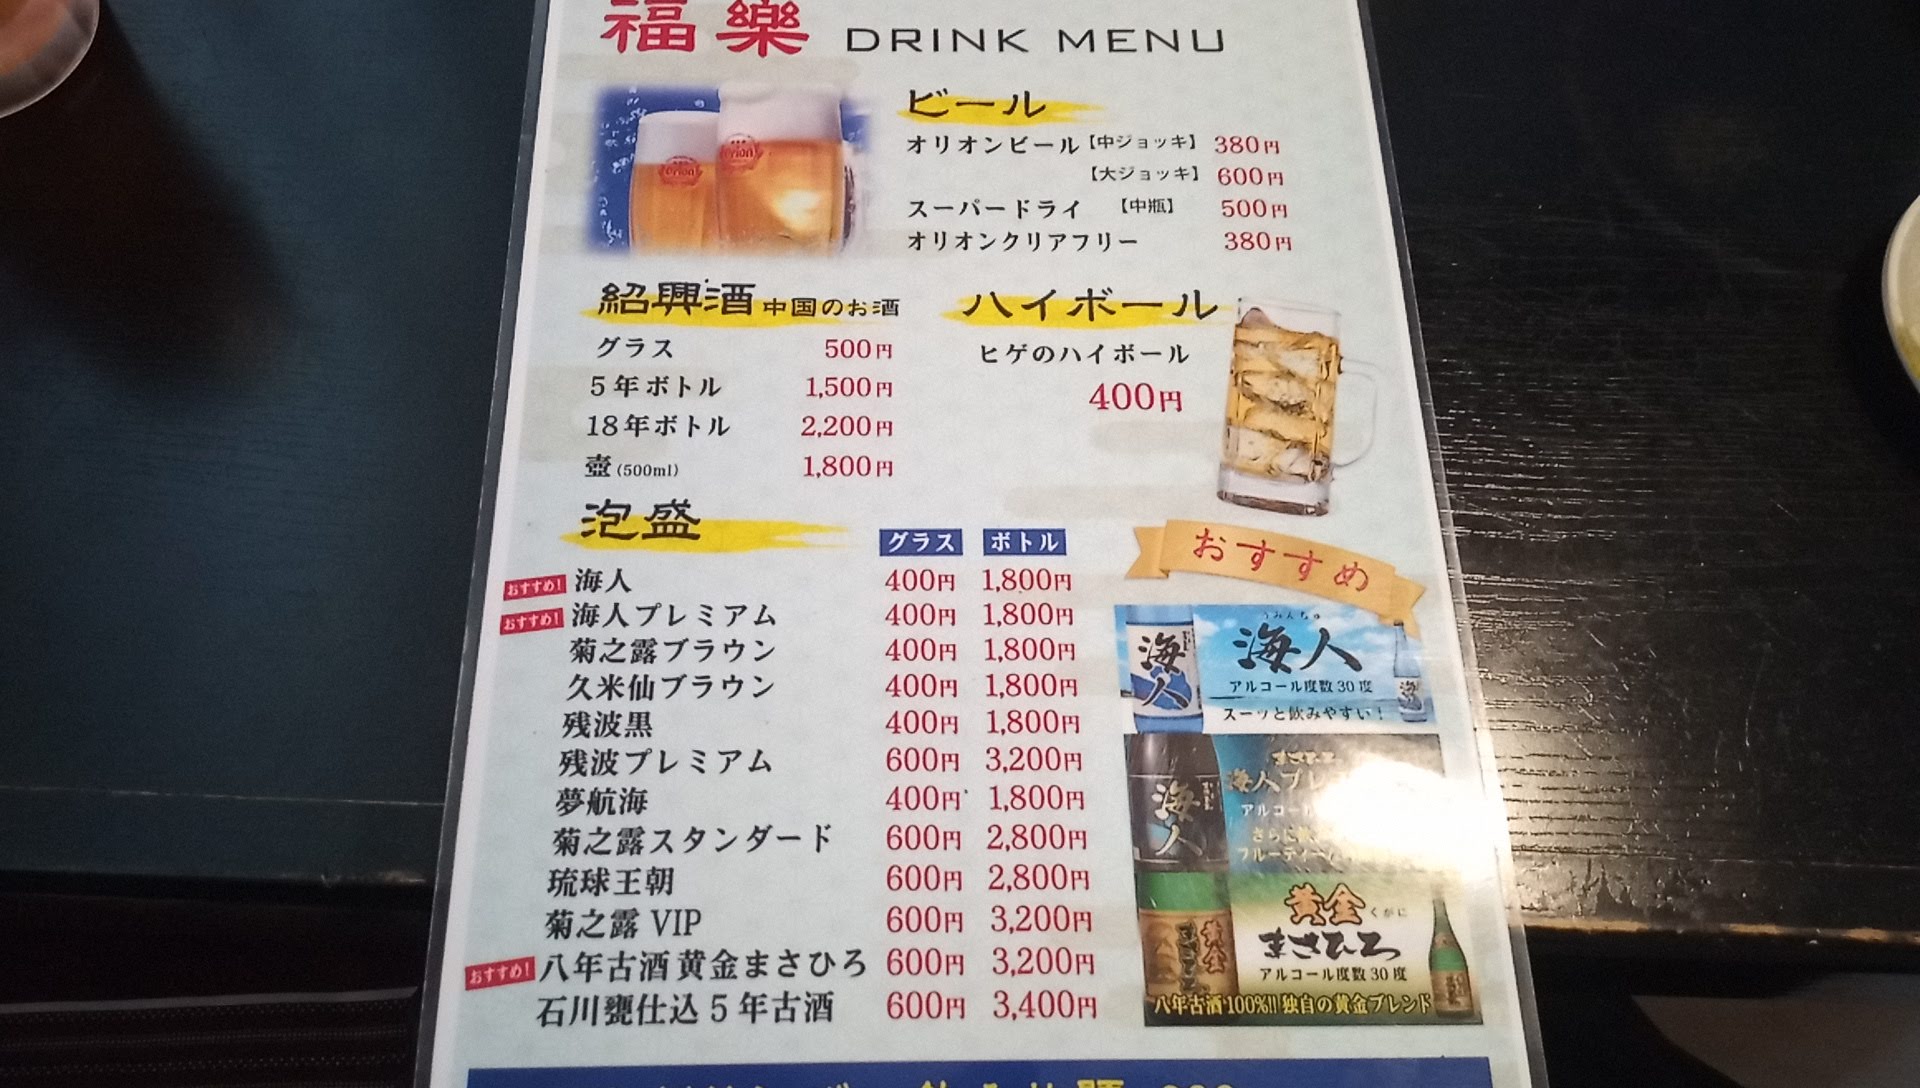 the drink menu (1)